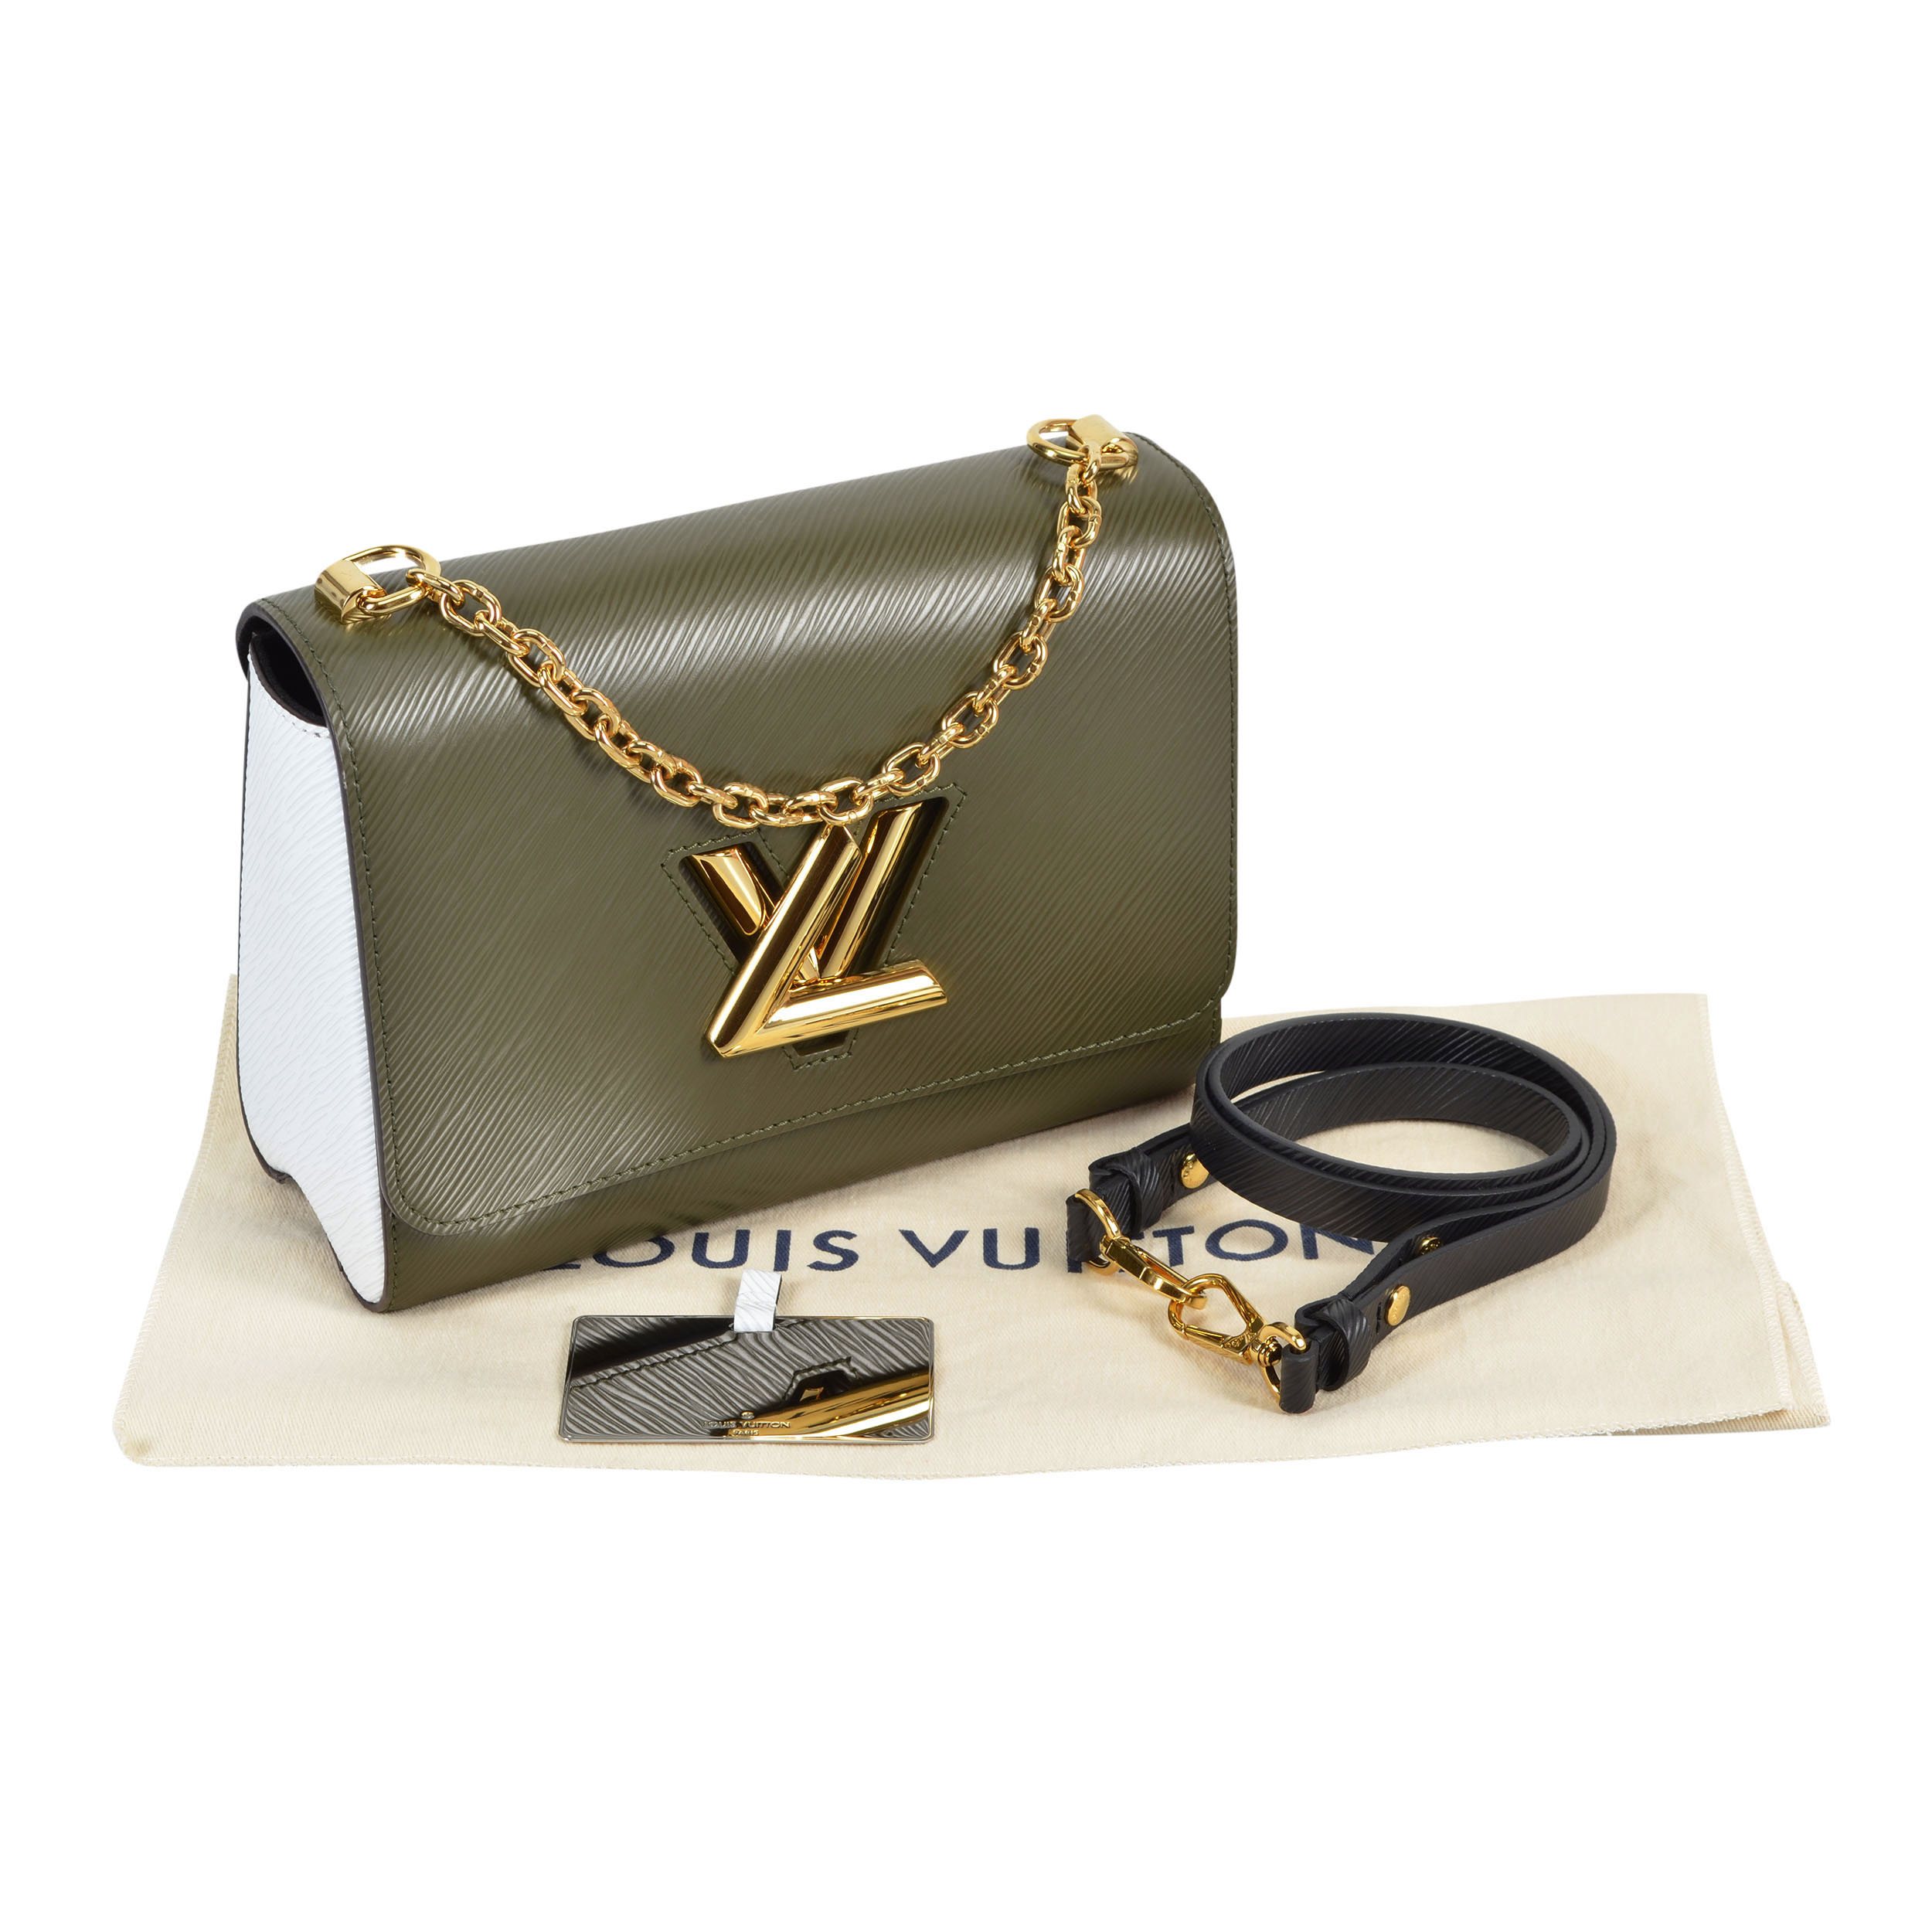 Louis Vuitton Taschen aus Leder - 34743109